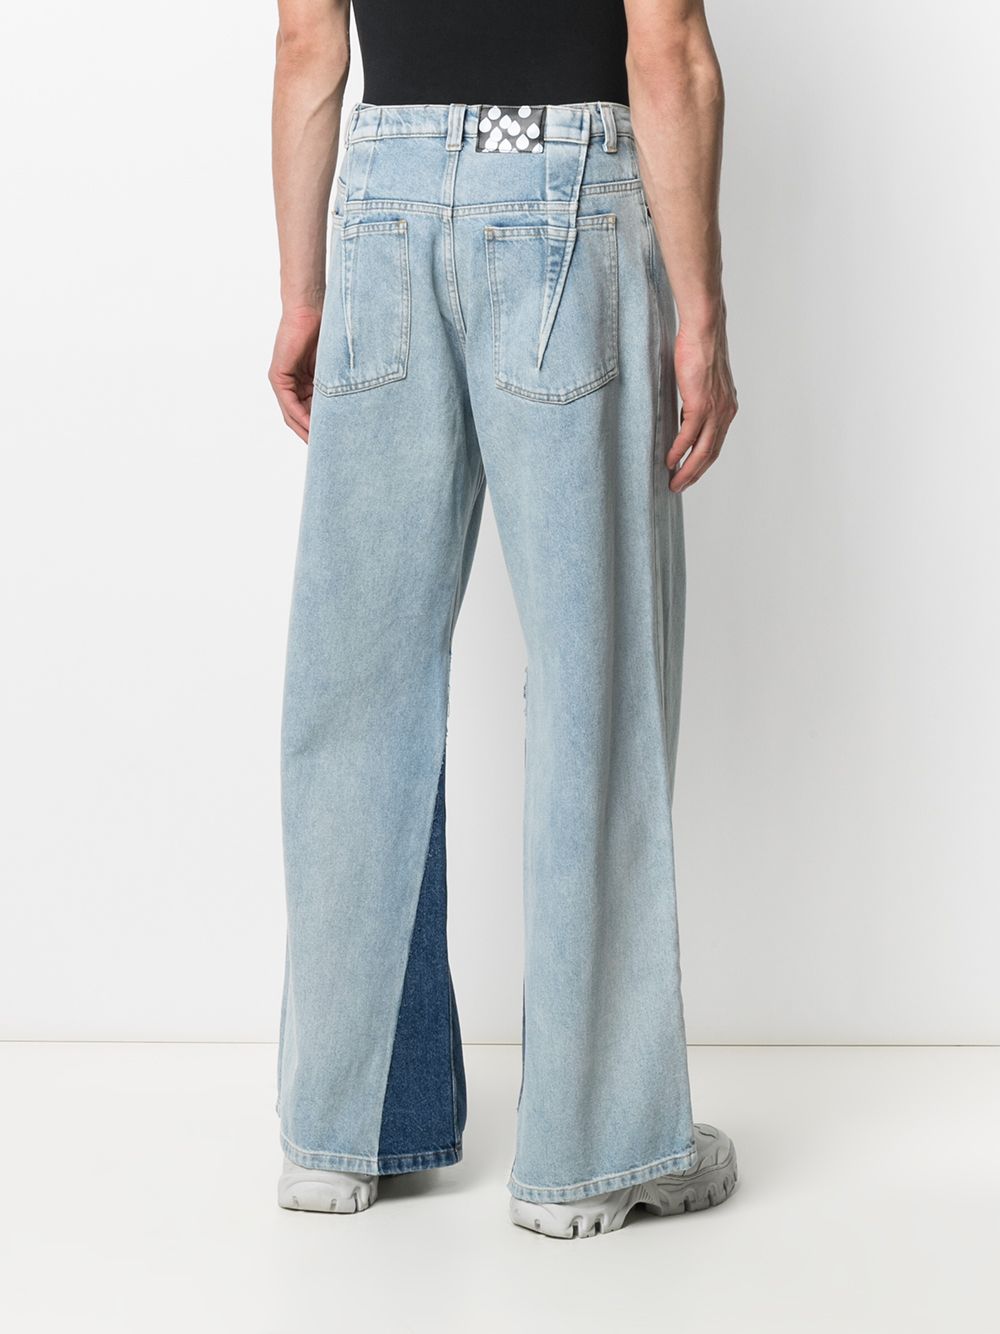 фото Duoltd широкие джинсы